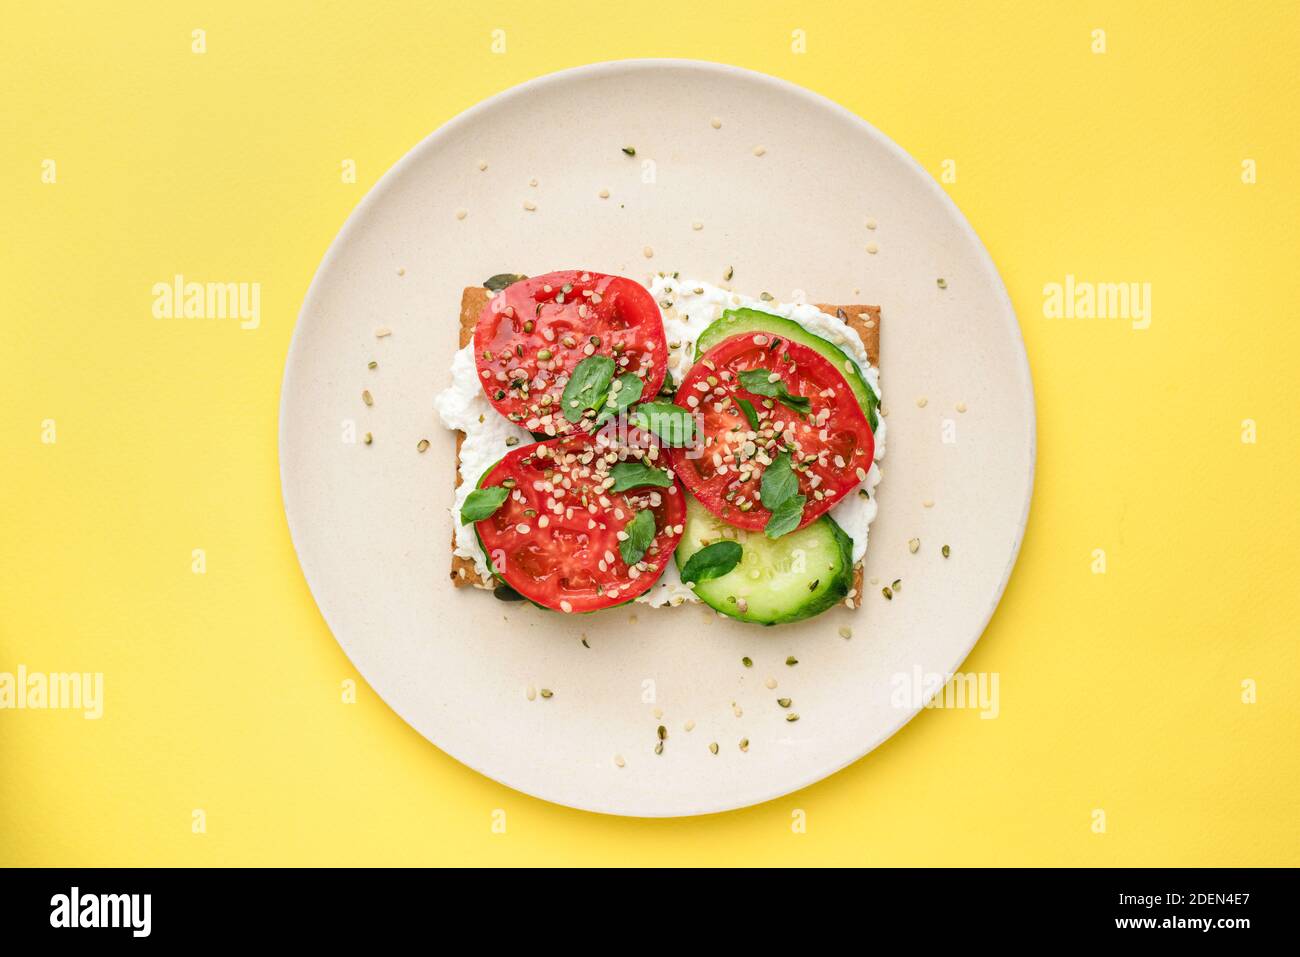 Roggen-Knäckebrot oder Cracker mit veganem Frischkäse, Tomaten, Gurken und Hanfsamen isoliert auf gelbem Hintergrund. Draufsicht. Gesunde Vorspeise oder Snack Stockfoto